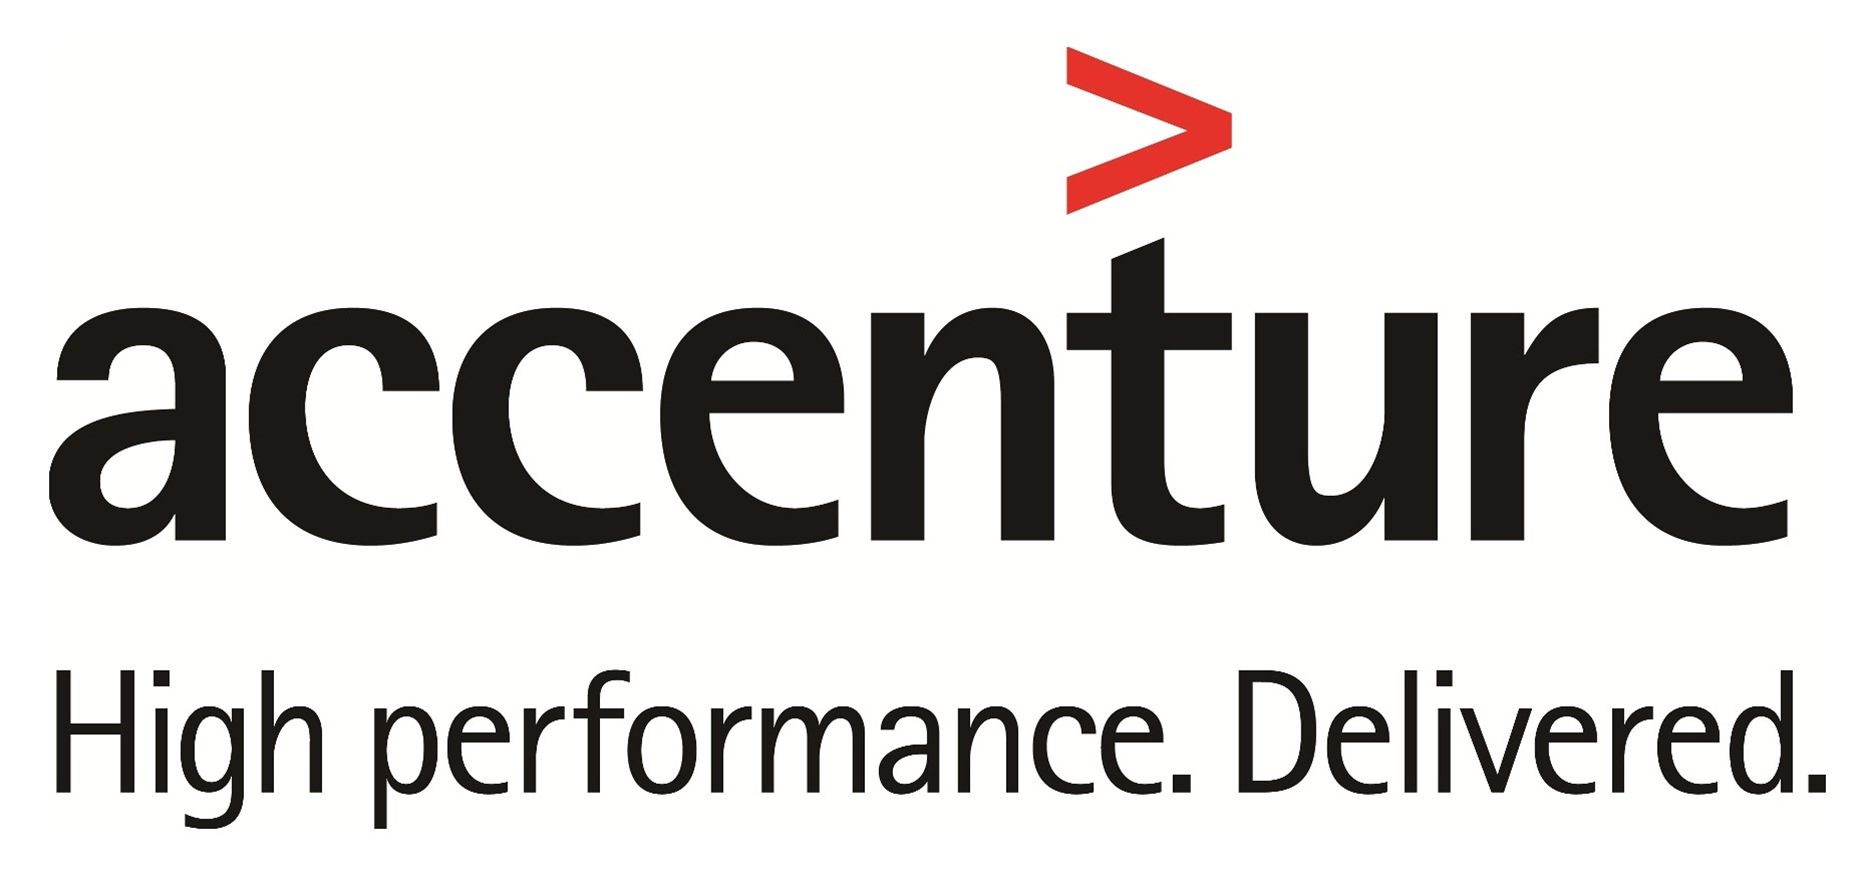 Accenture Inc.